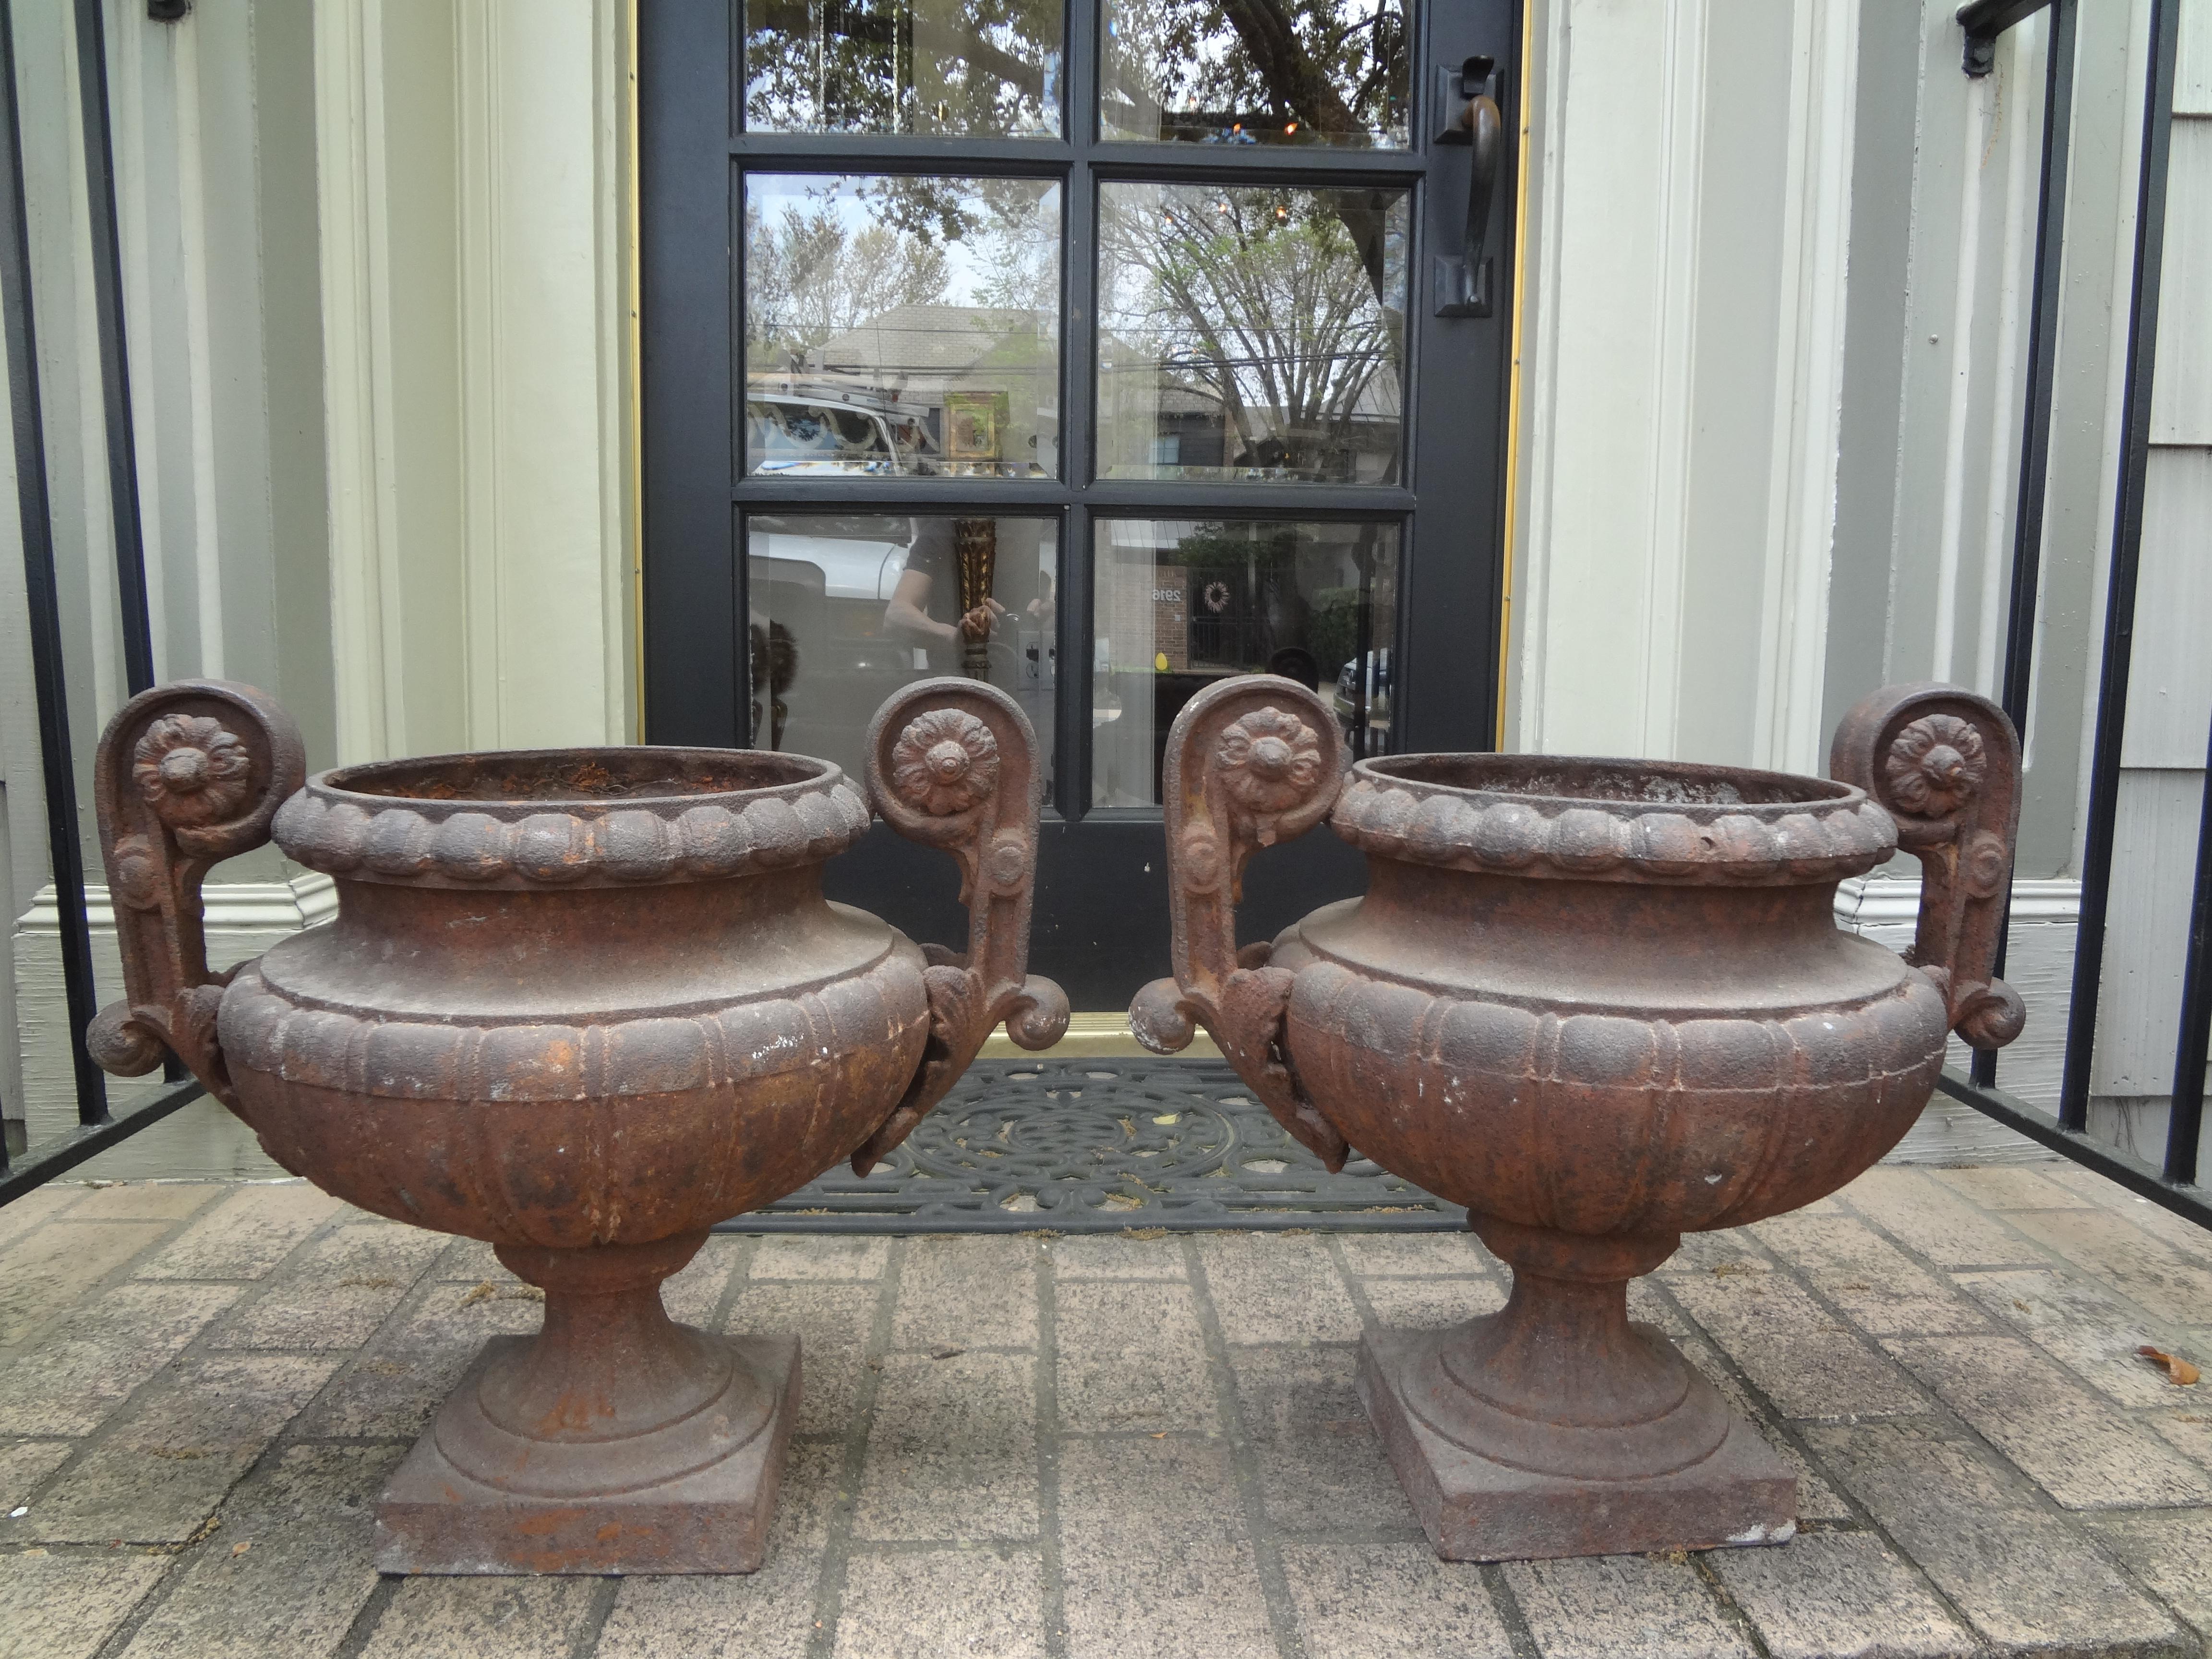 Paire d'urnes de jardin en fonte française du 19ème siècle avec poignées. Ces étonnantes urnes, jardinières ou jardinières en fer français ont de belles poignées qui sont de taille parfaite pour être utilisées à l'intérieur ou à l'extérieur.